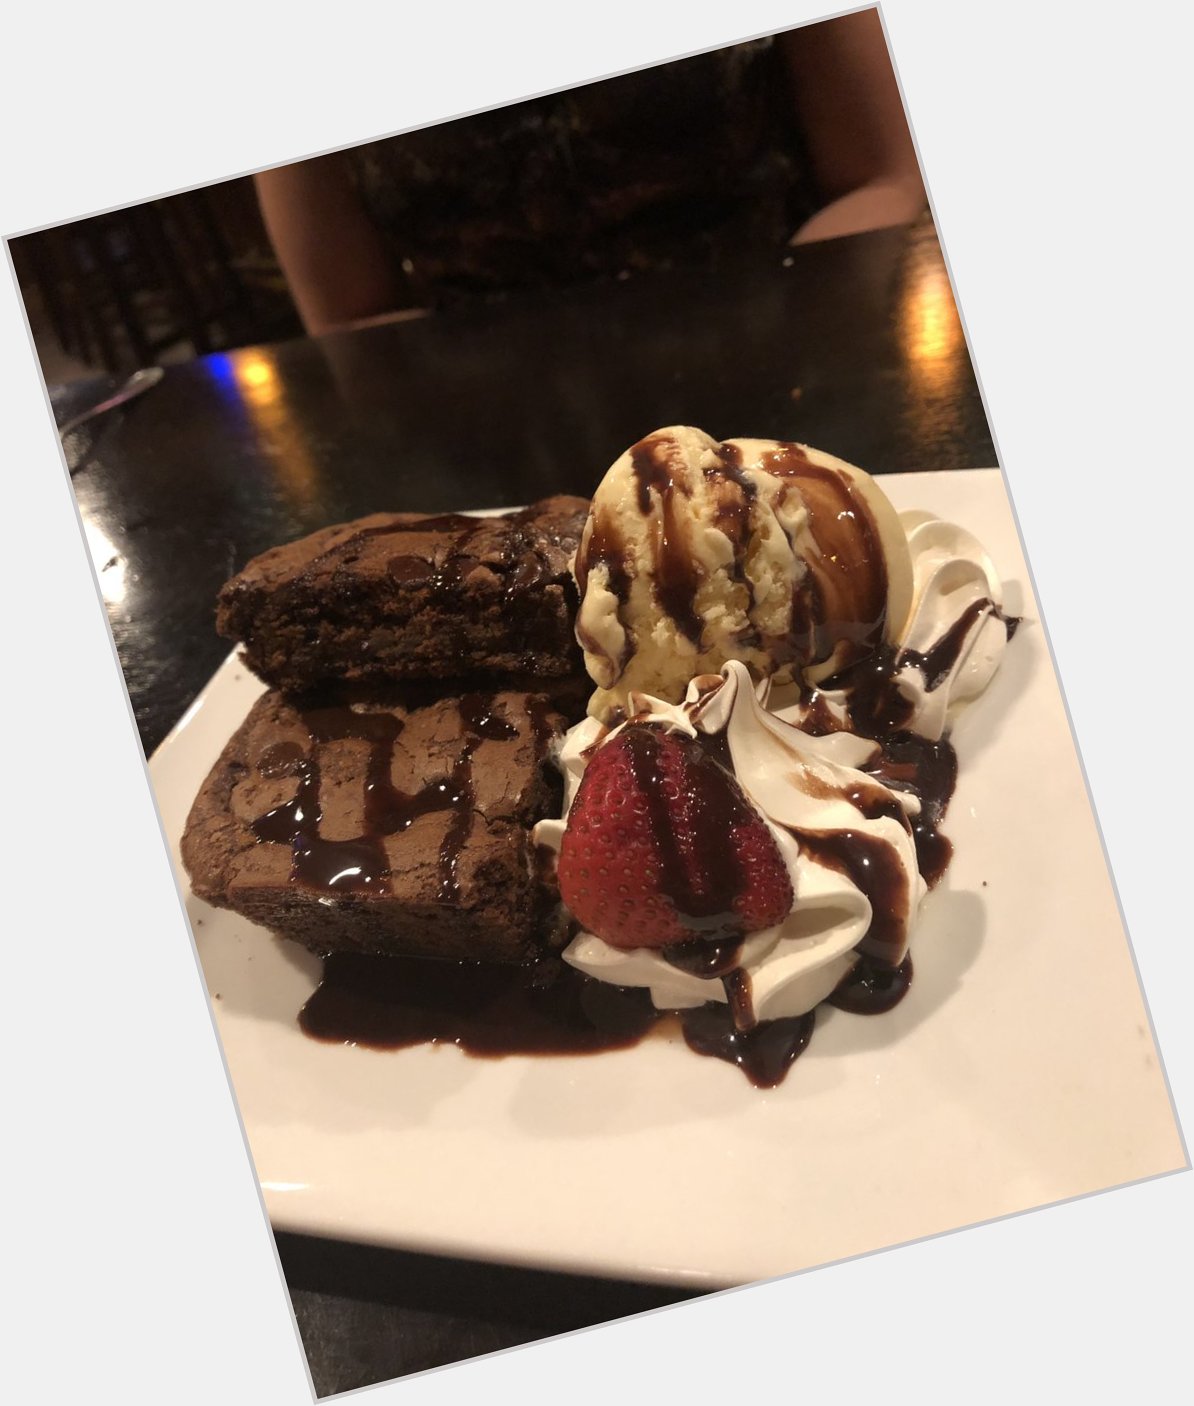 My Happy Birthday desert! Chocolate covered brownie with vanilla ice cream and whip cream! 